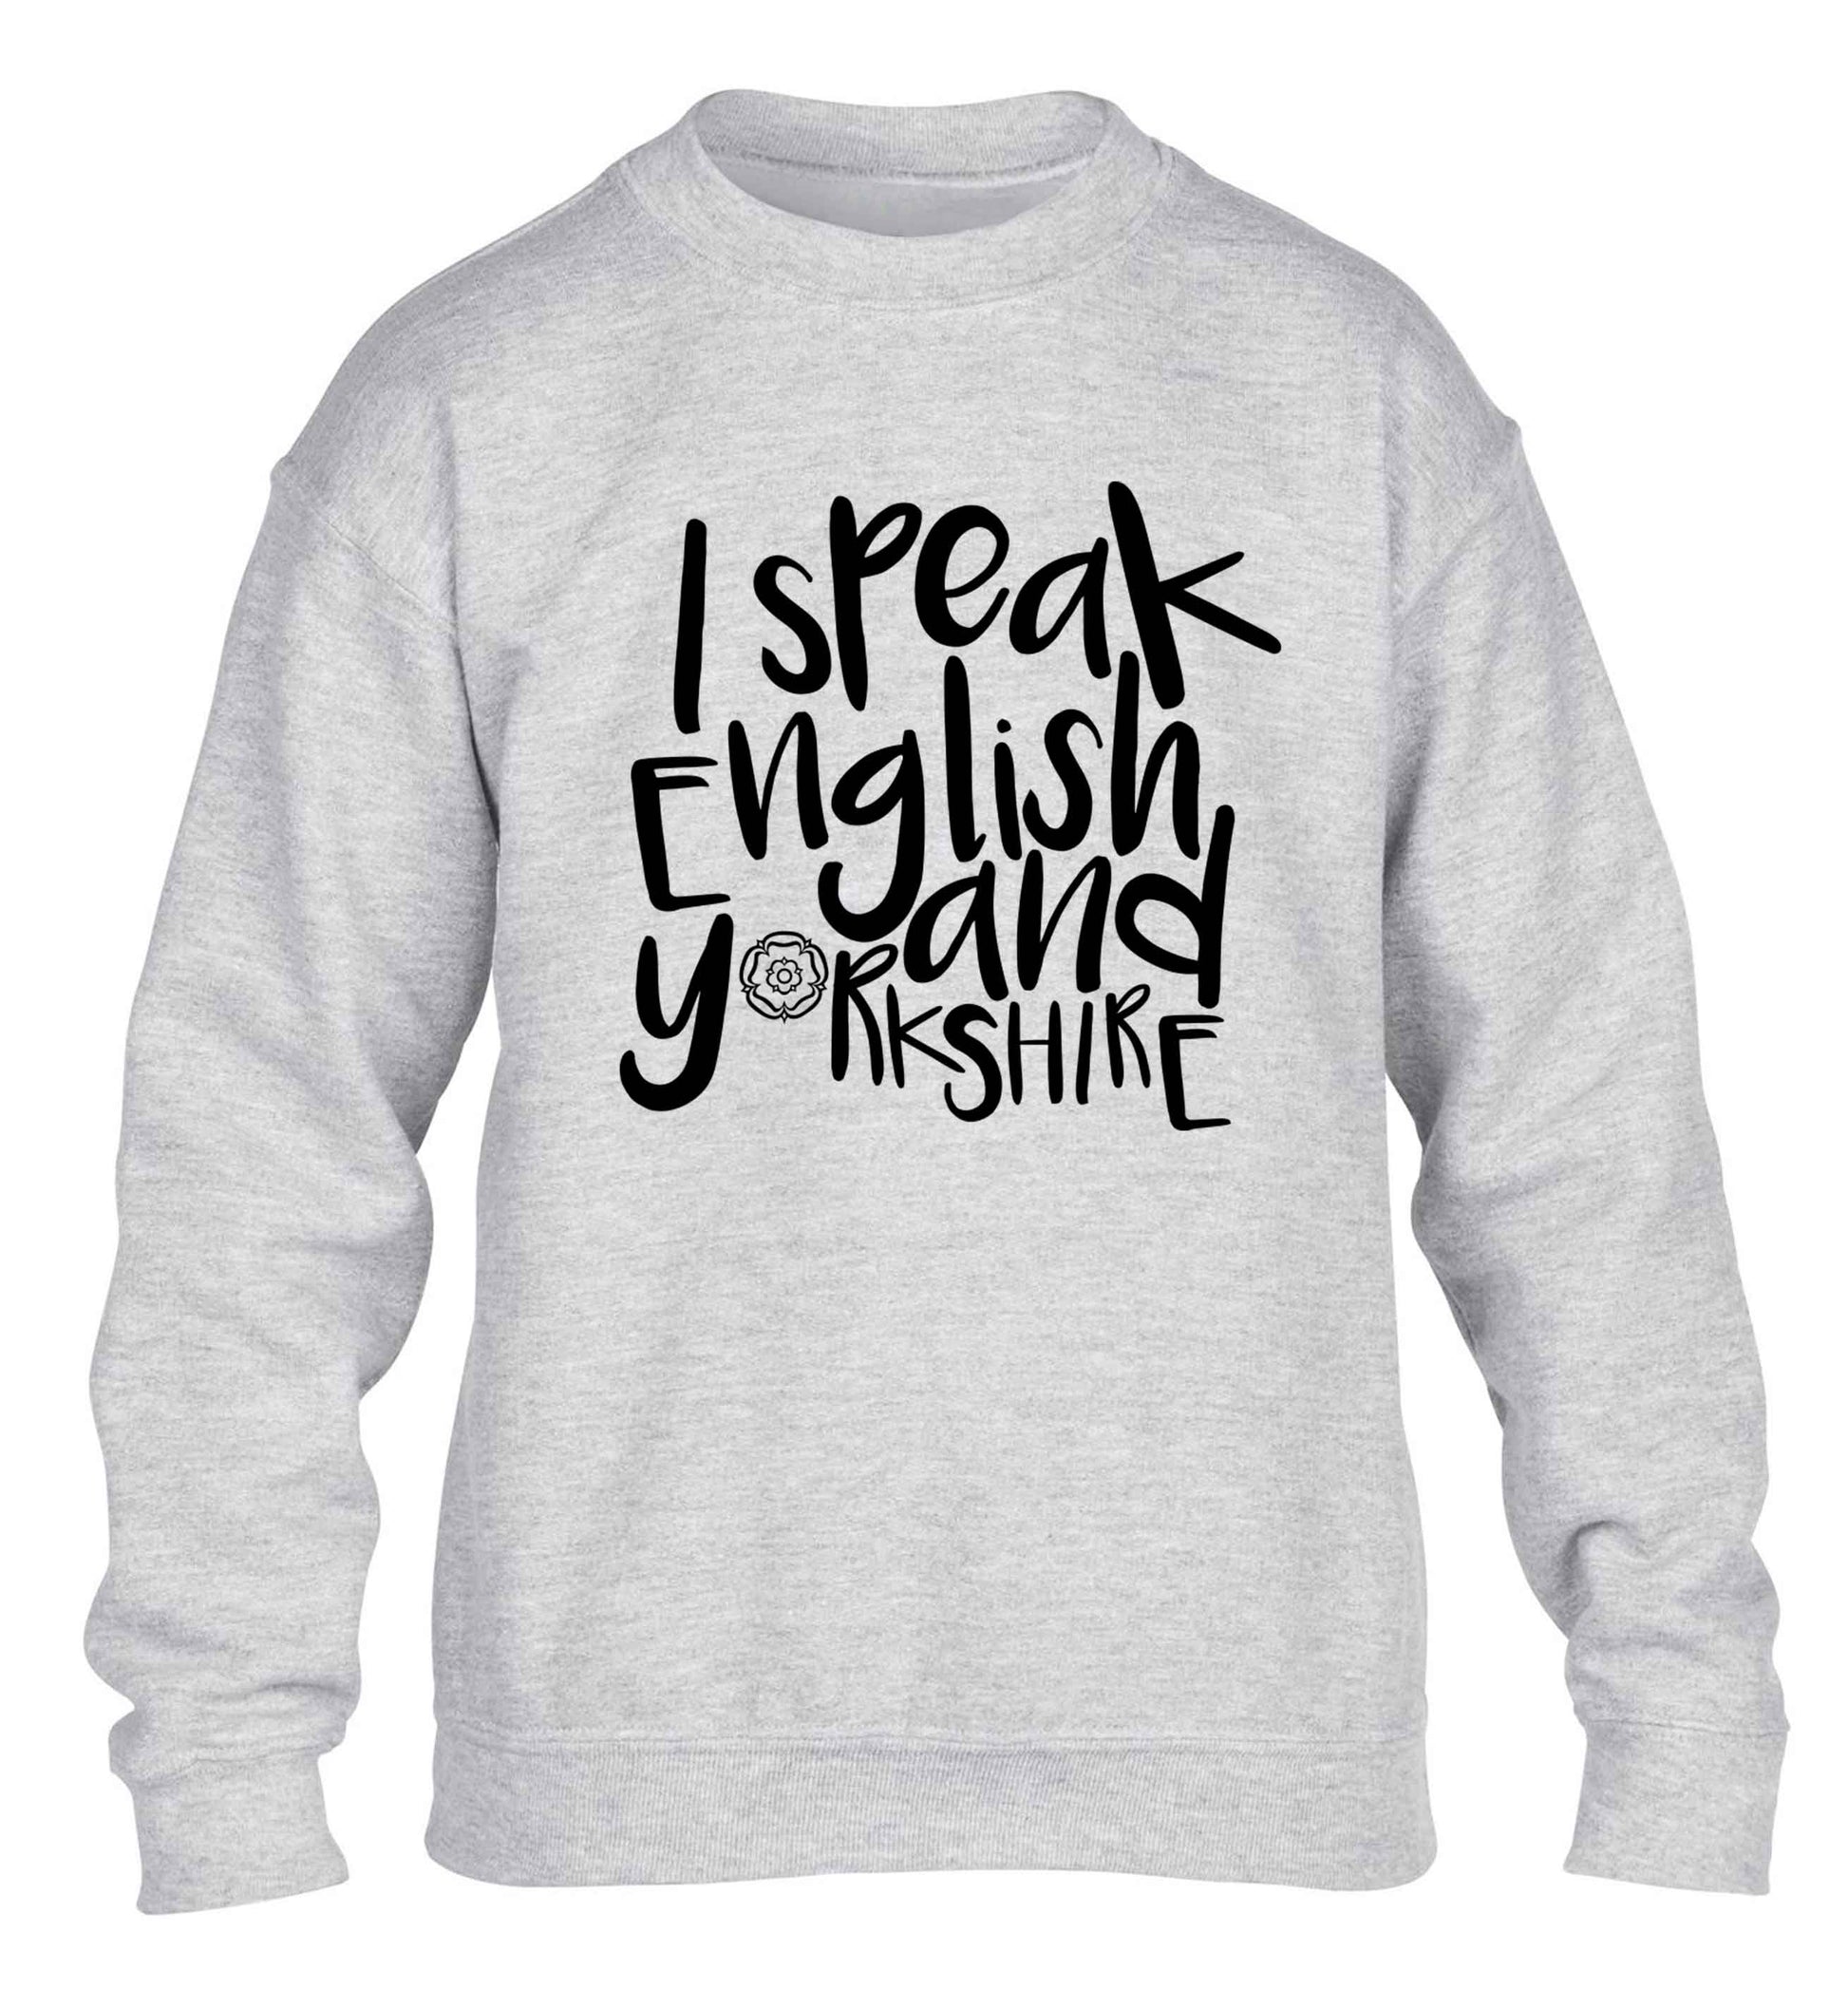 I speak English and Yorkshire children's grey sweater 12-13 Years